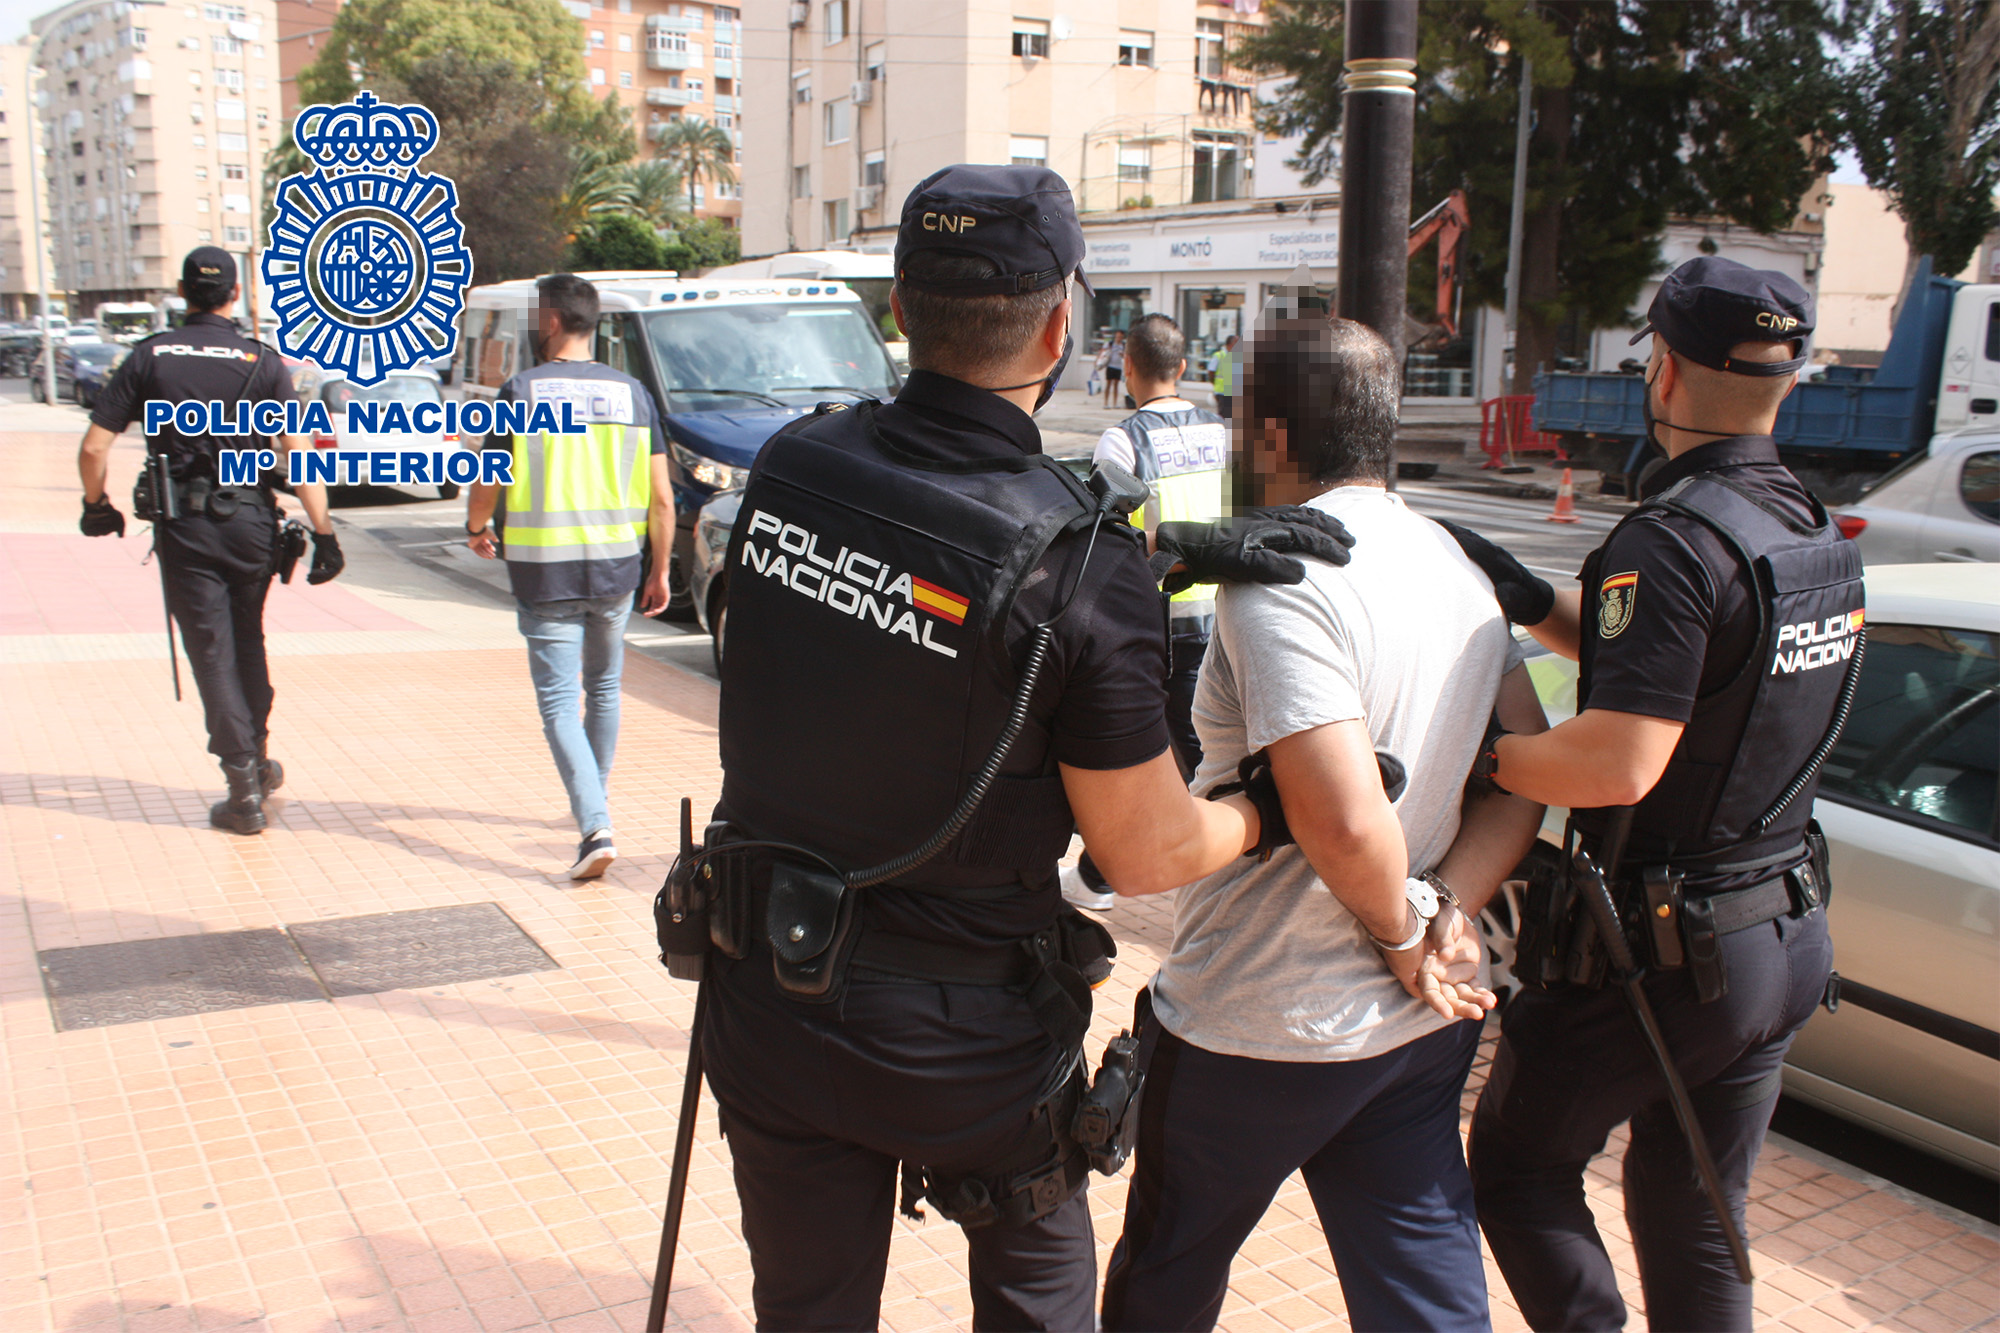 Trasllat del detingut per dos agents de Policia Nacional